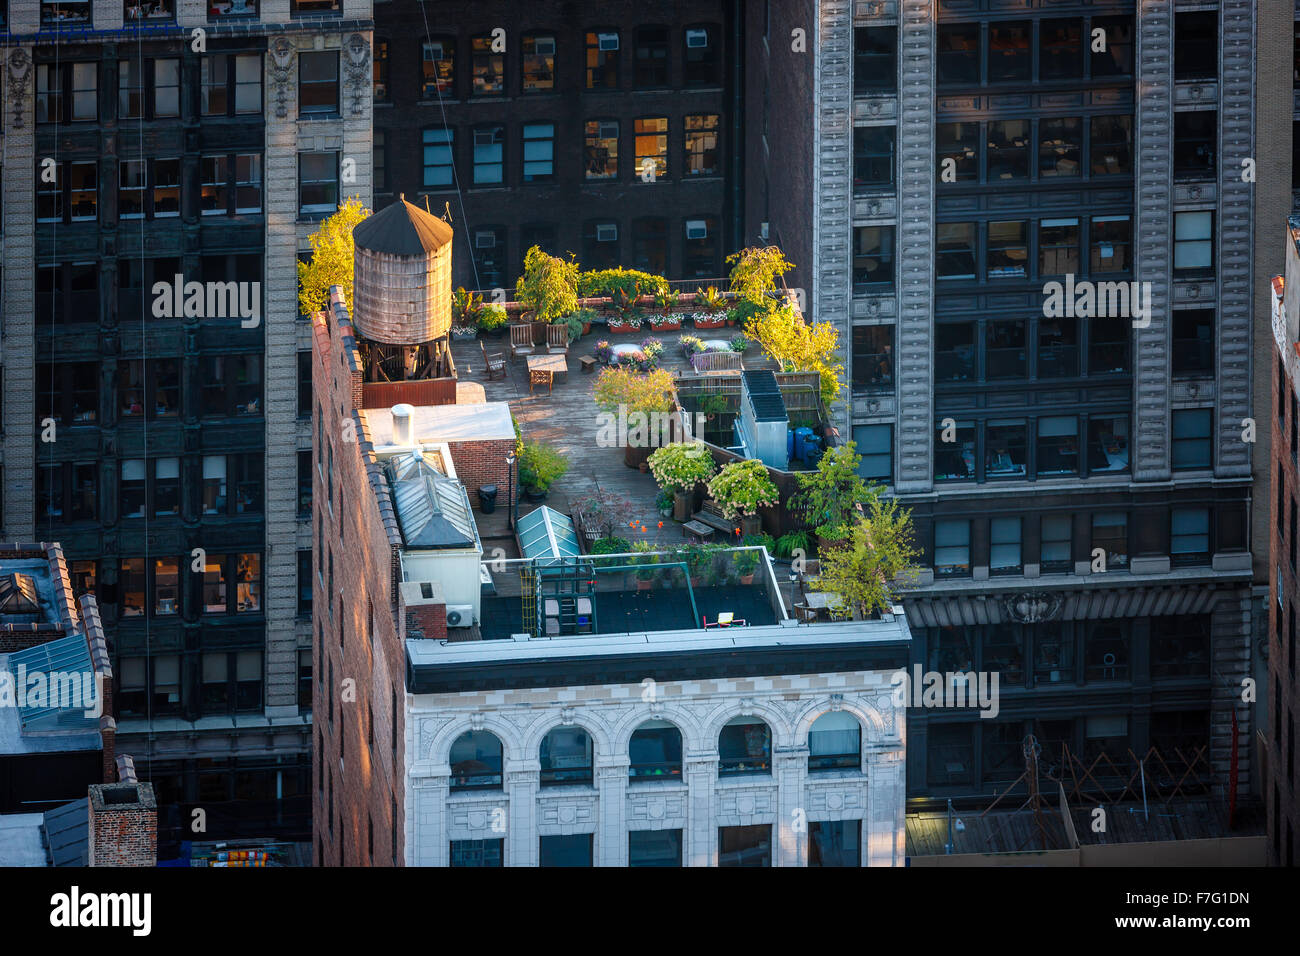 Vue aérienne d'un toit de Manhattan au coeur de New York City. Jardin sur le toit à Chelsea avec arbres et éclairée par le réservoir d'eau en bois Banque D'Images